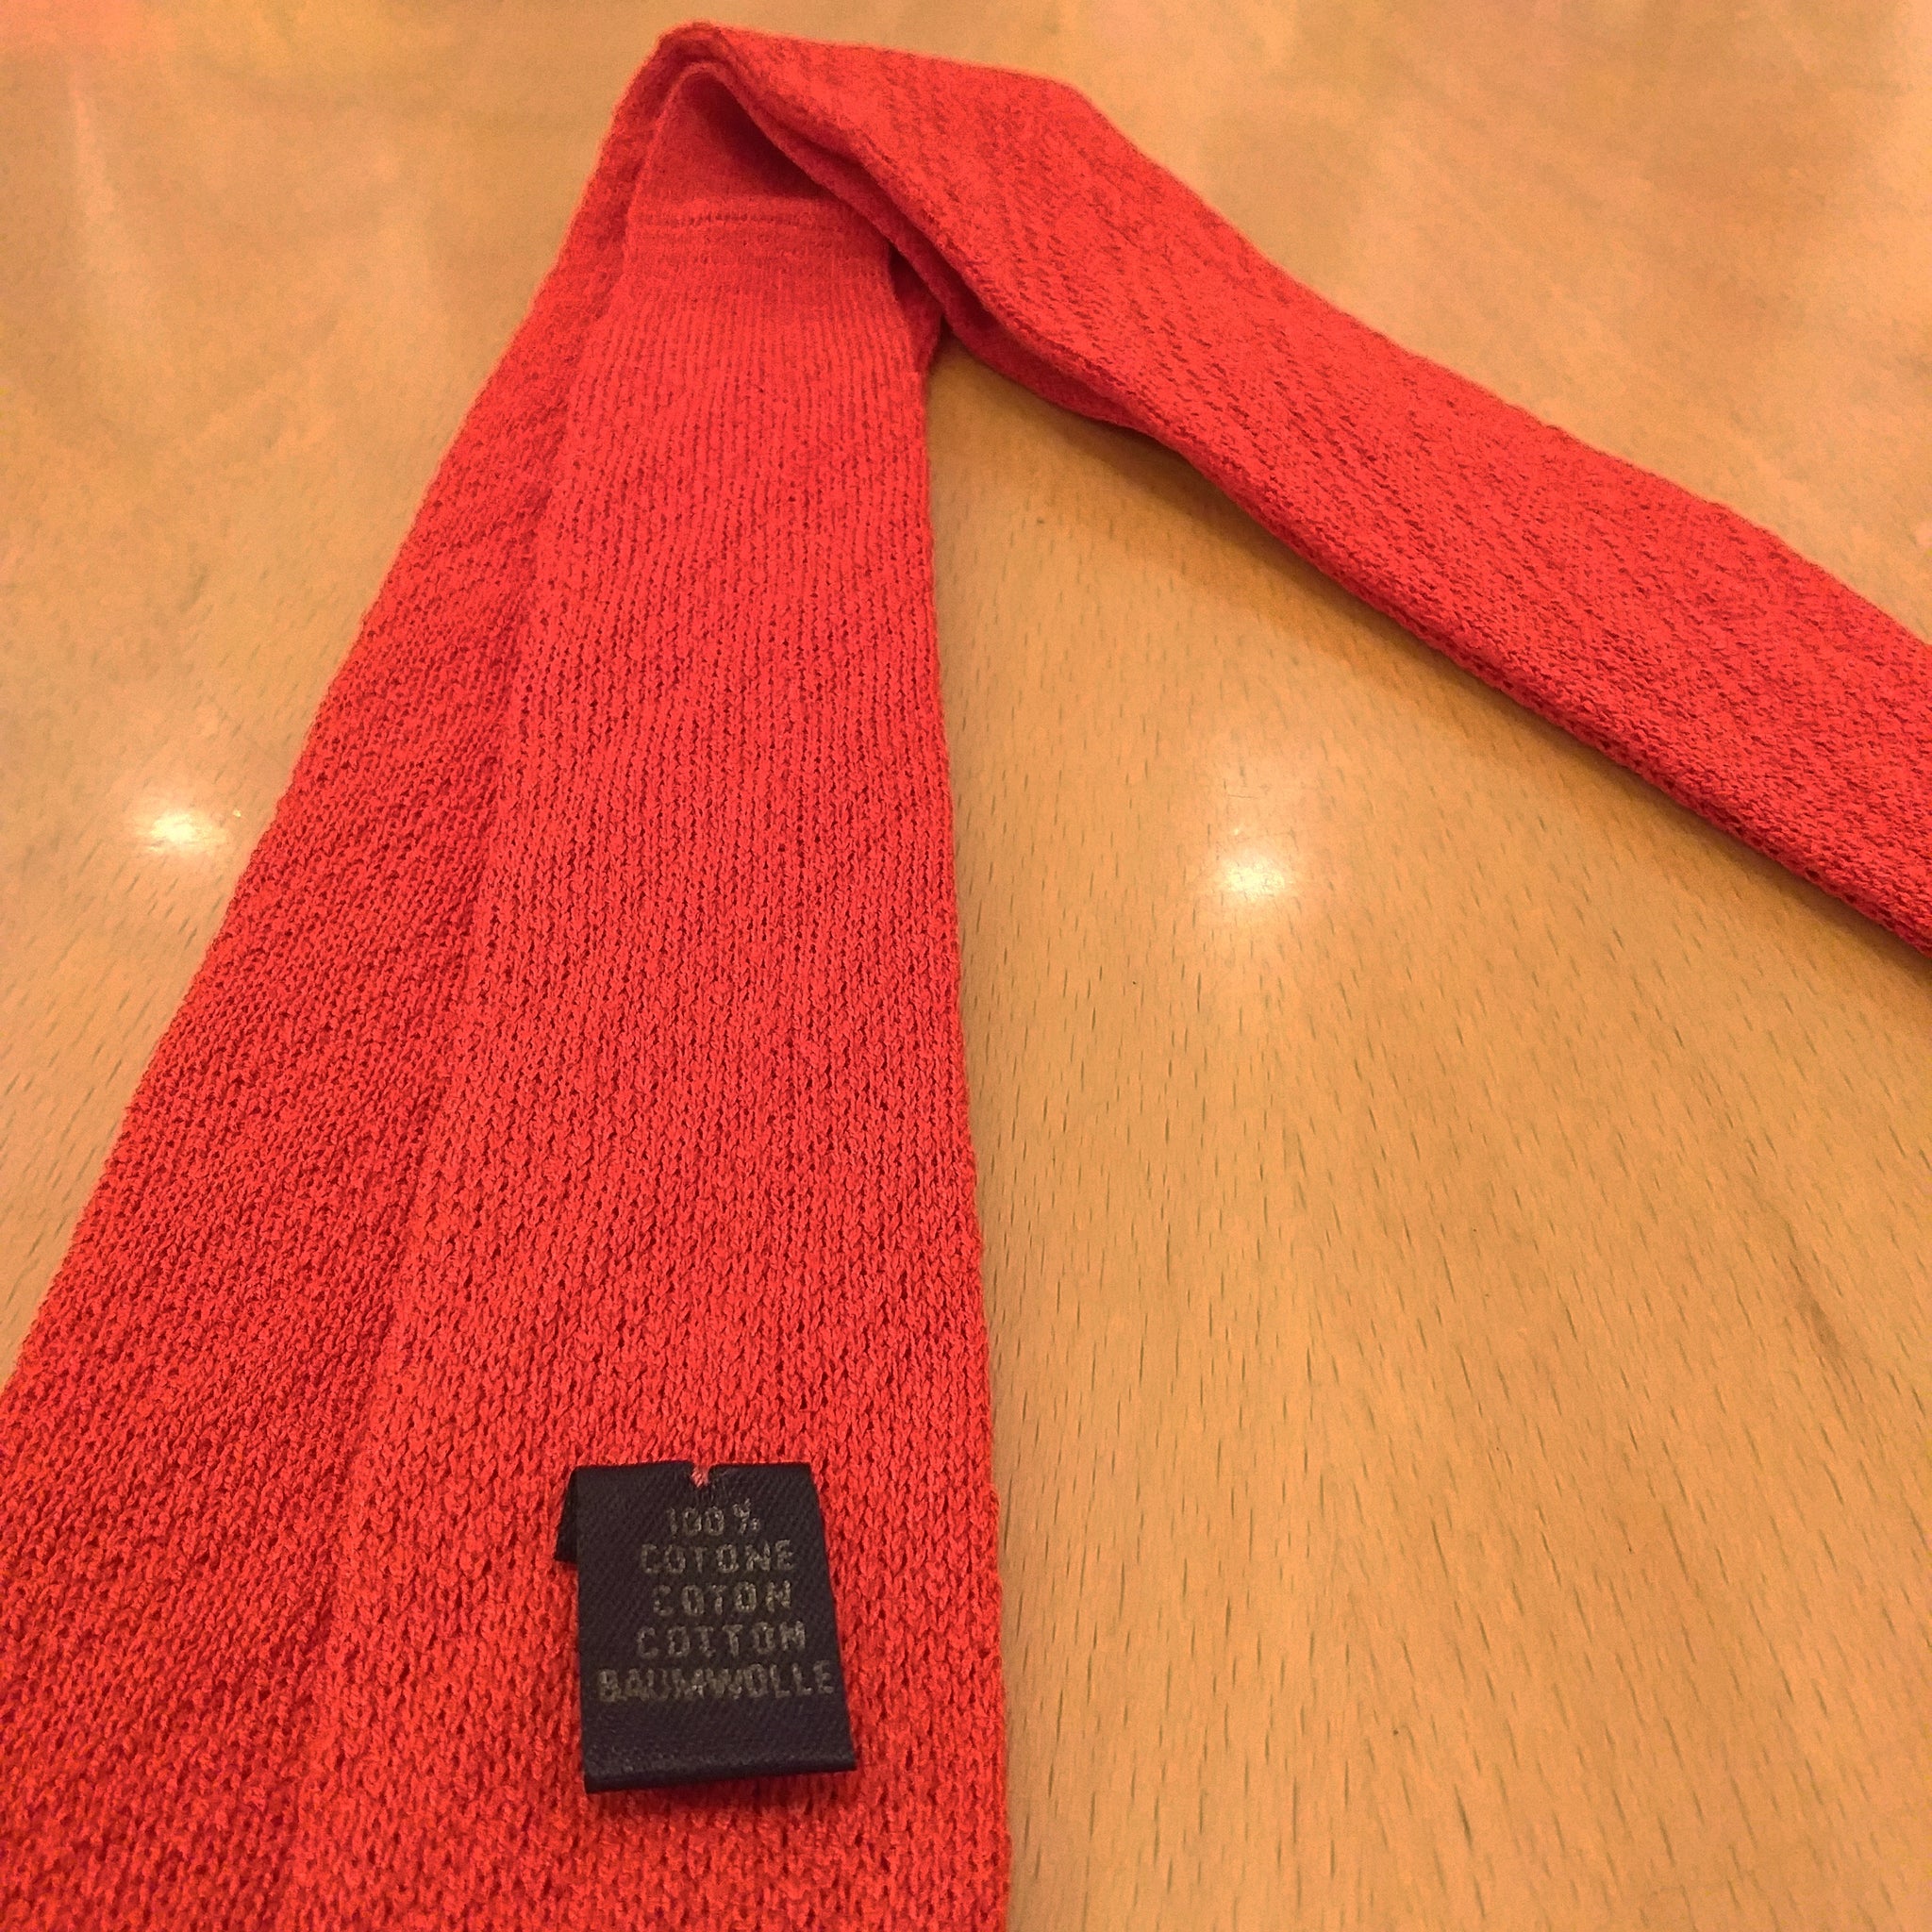 Cravatte a calzino 🧶🧦🧶🧦 fatte maglia (knitted sock tie)